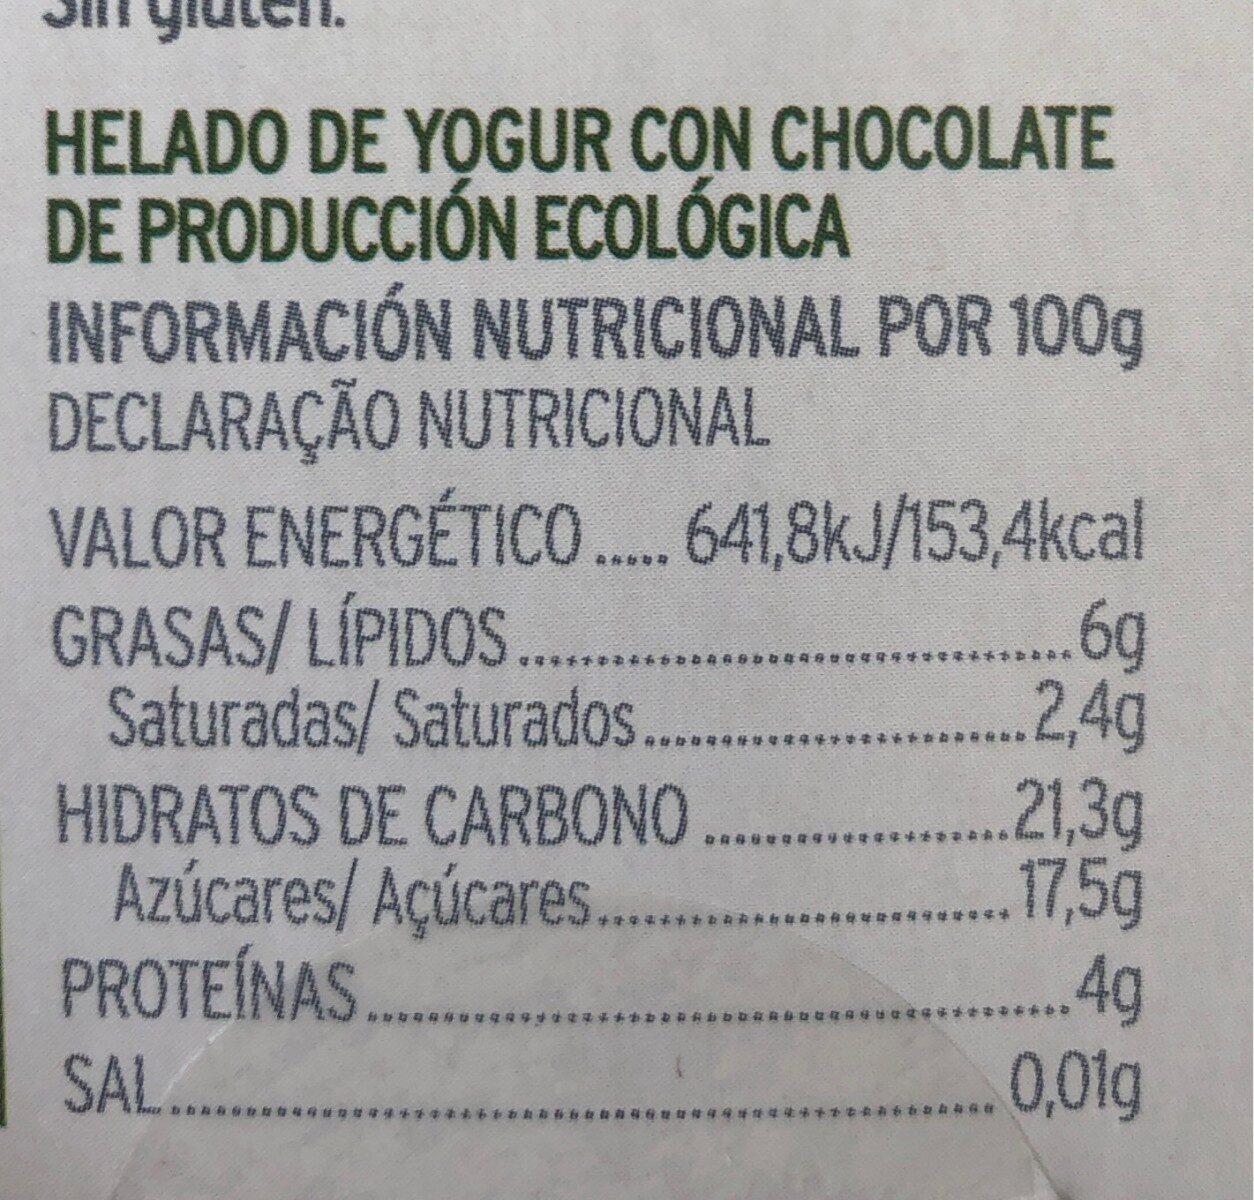 Helado de Yogur de Chocolate - Nutrition facts - es